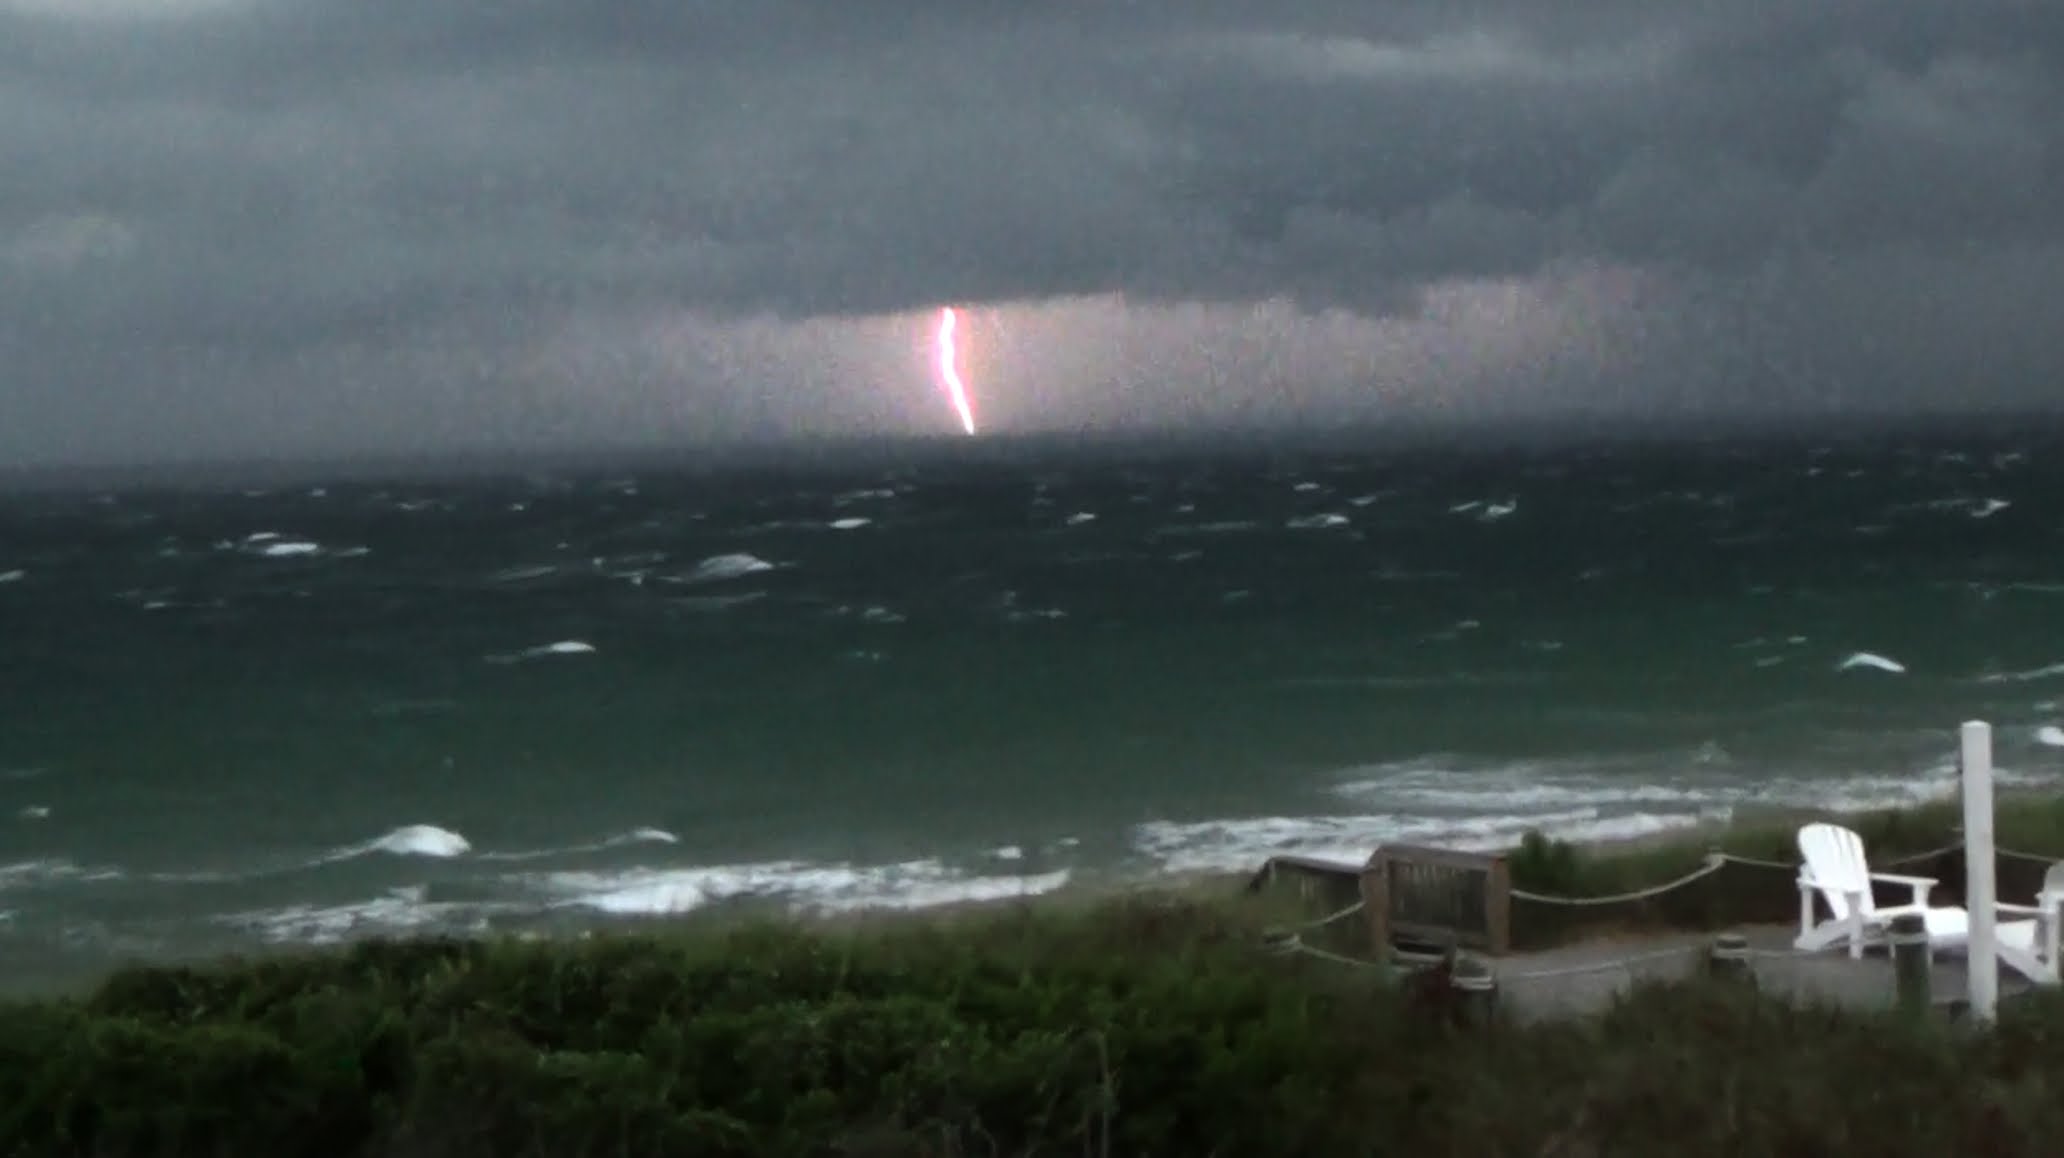 Violent Ocean Lightning - Outer Banks, 6-19-2014 - YouTube